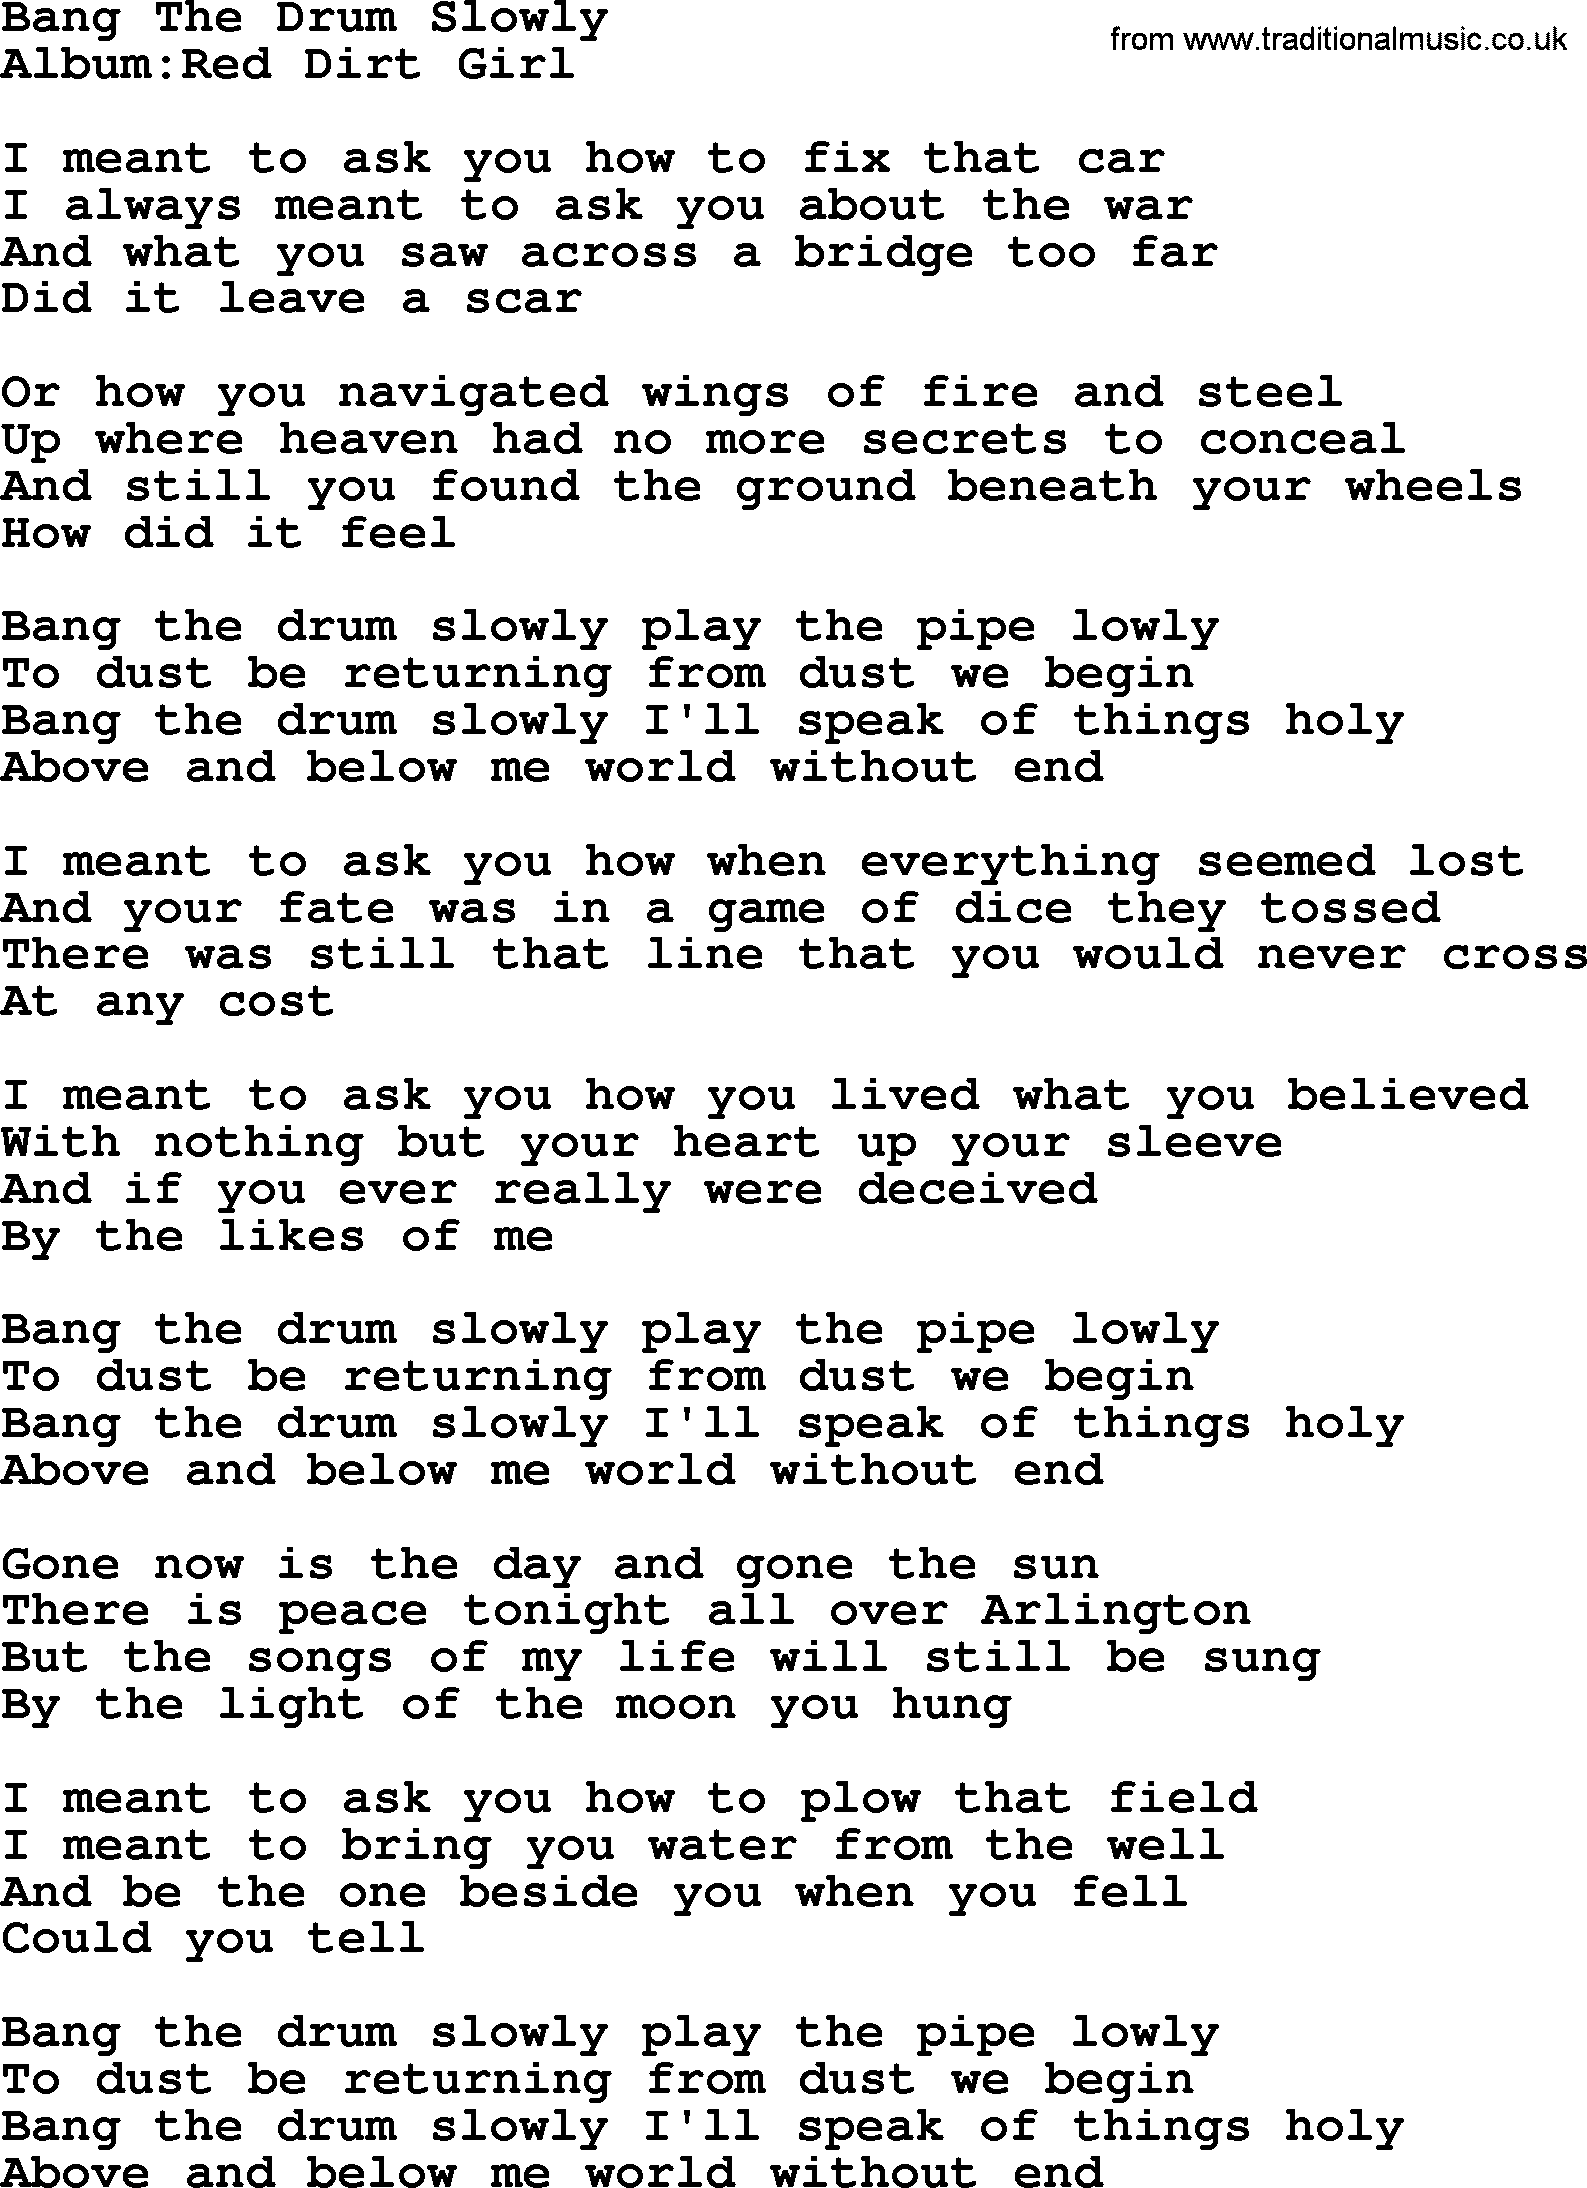 Emmylou Harris song: Bang The Drum Slowly lyrics